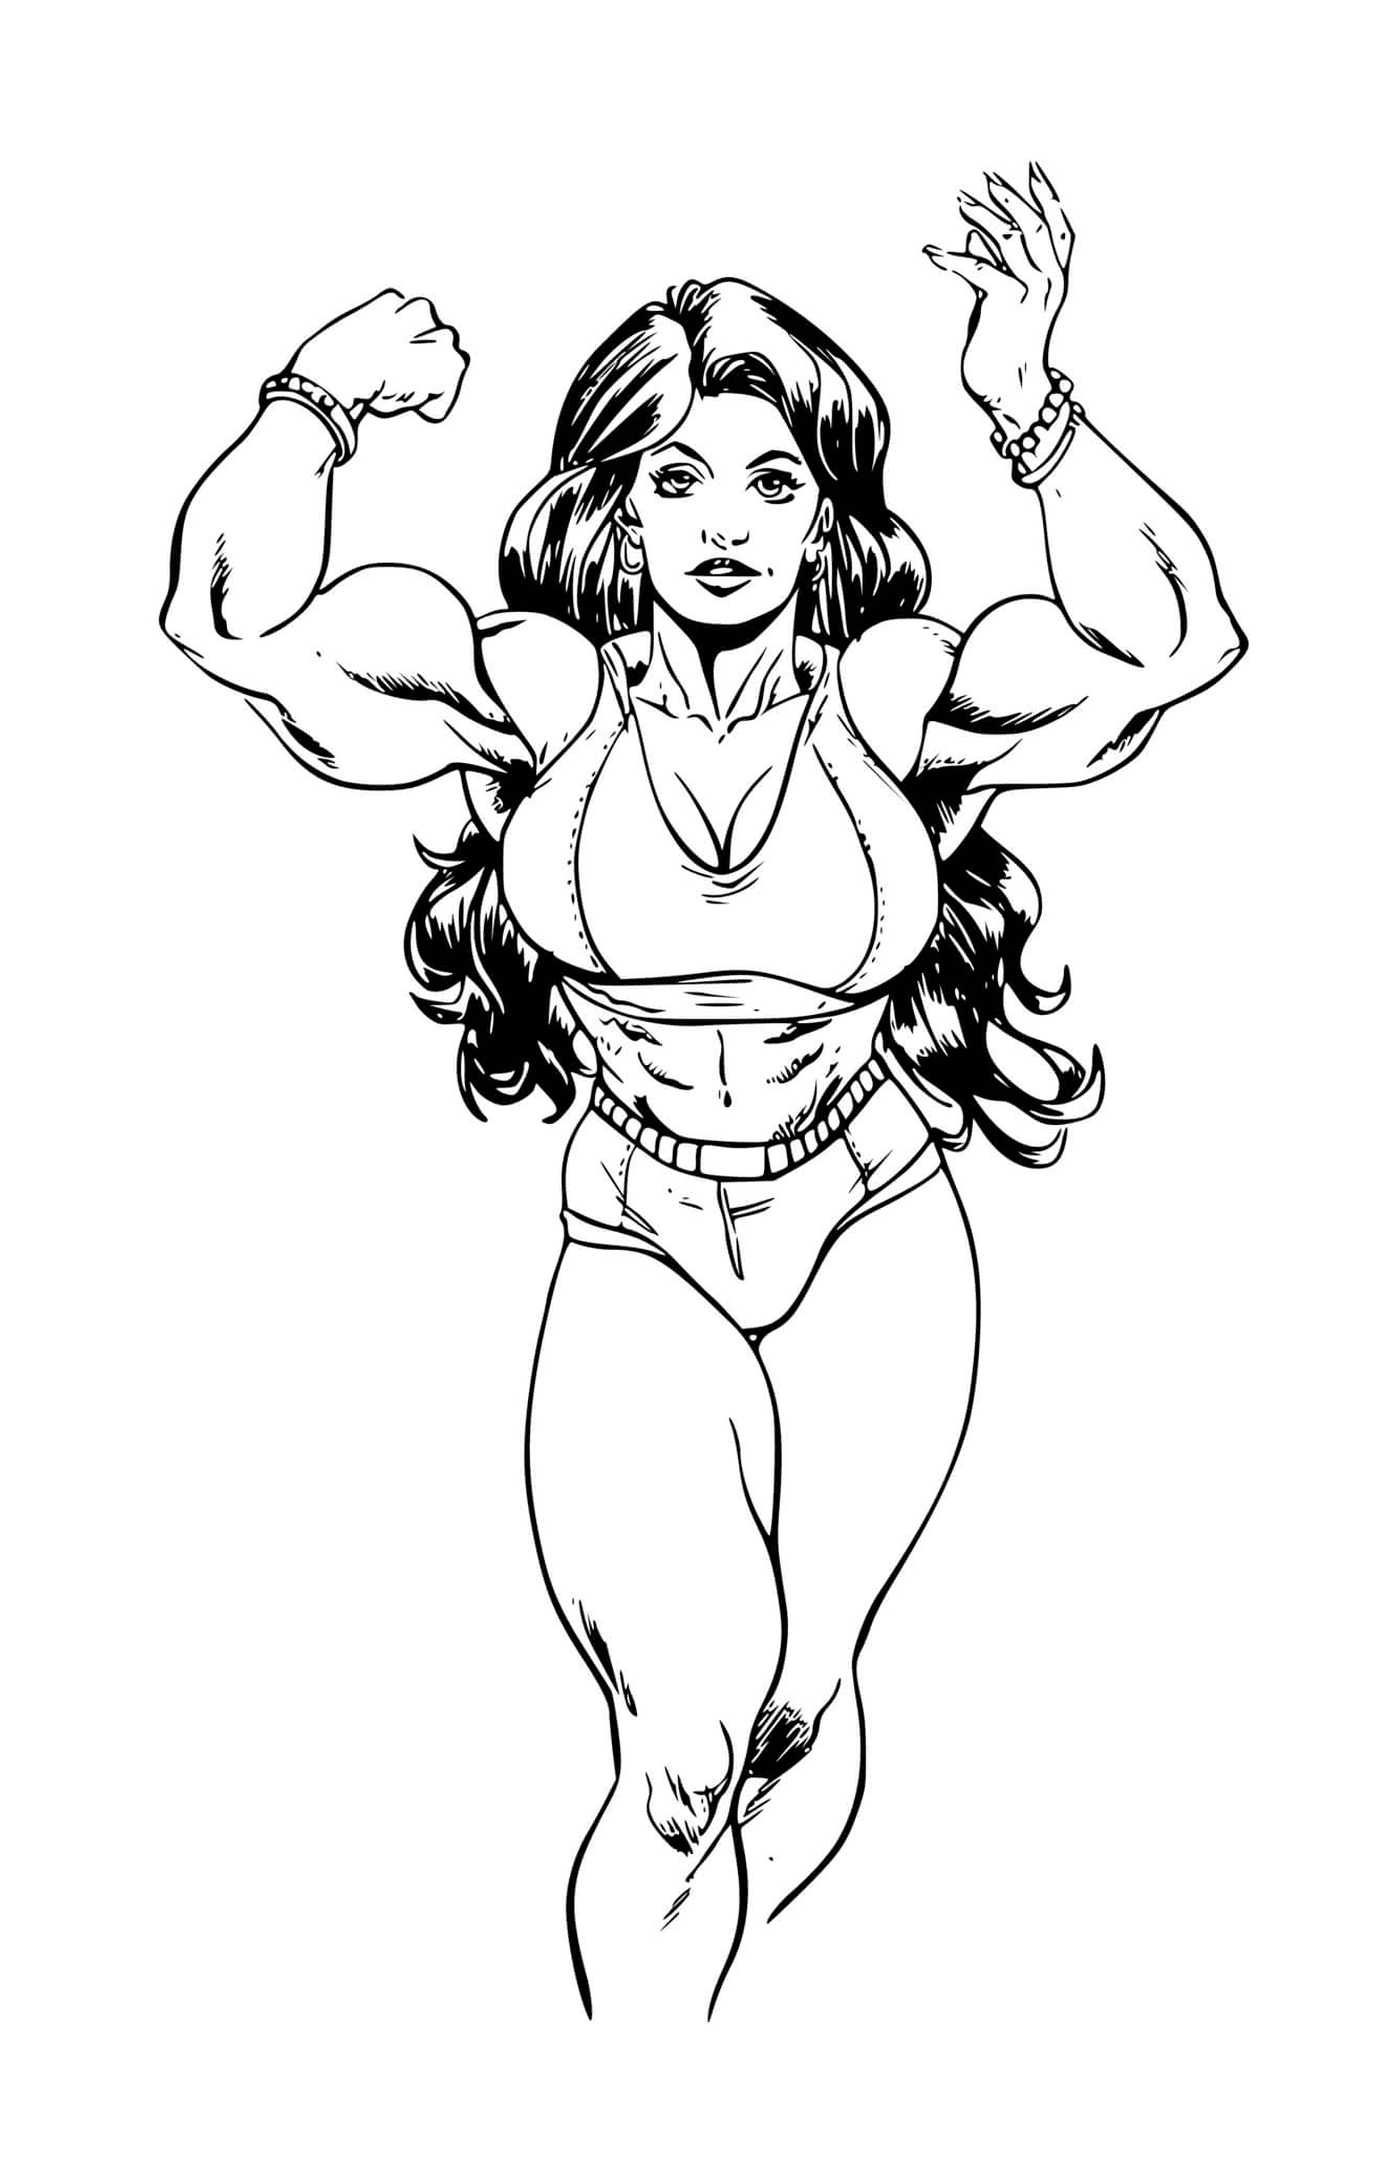  Super eroina She-Hulk 